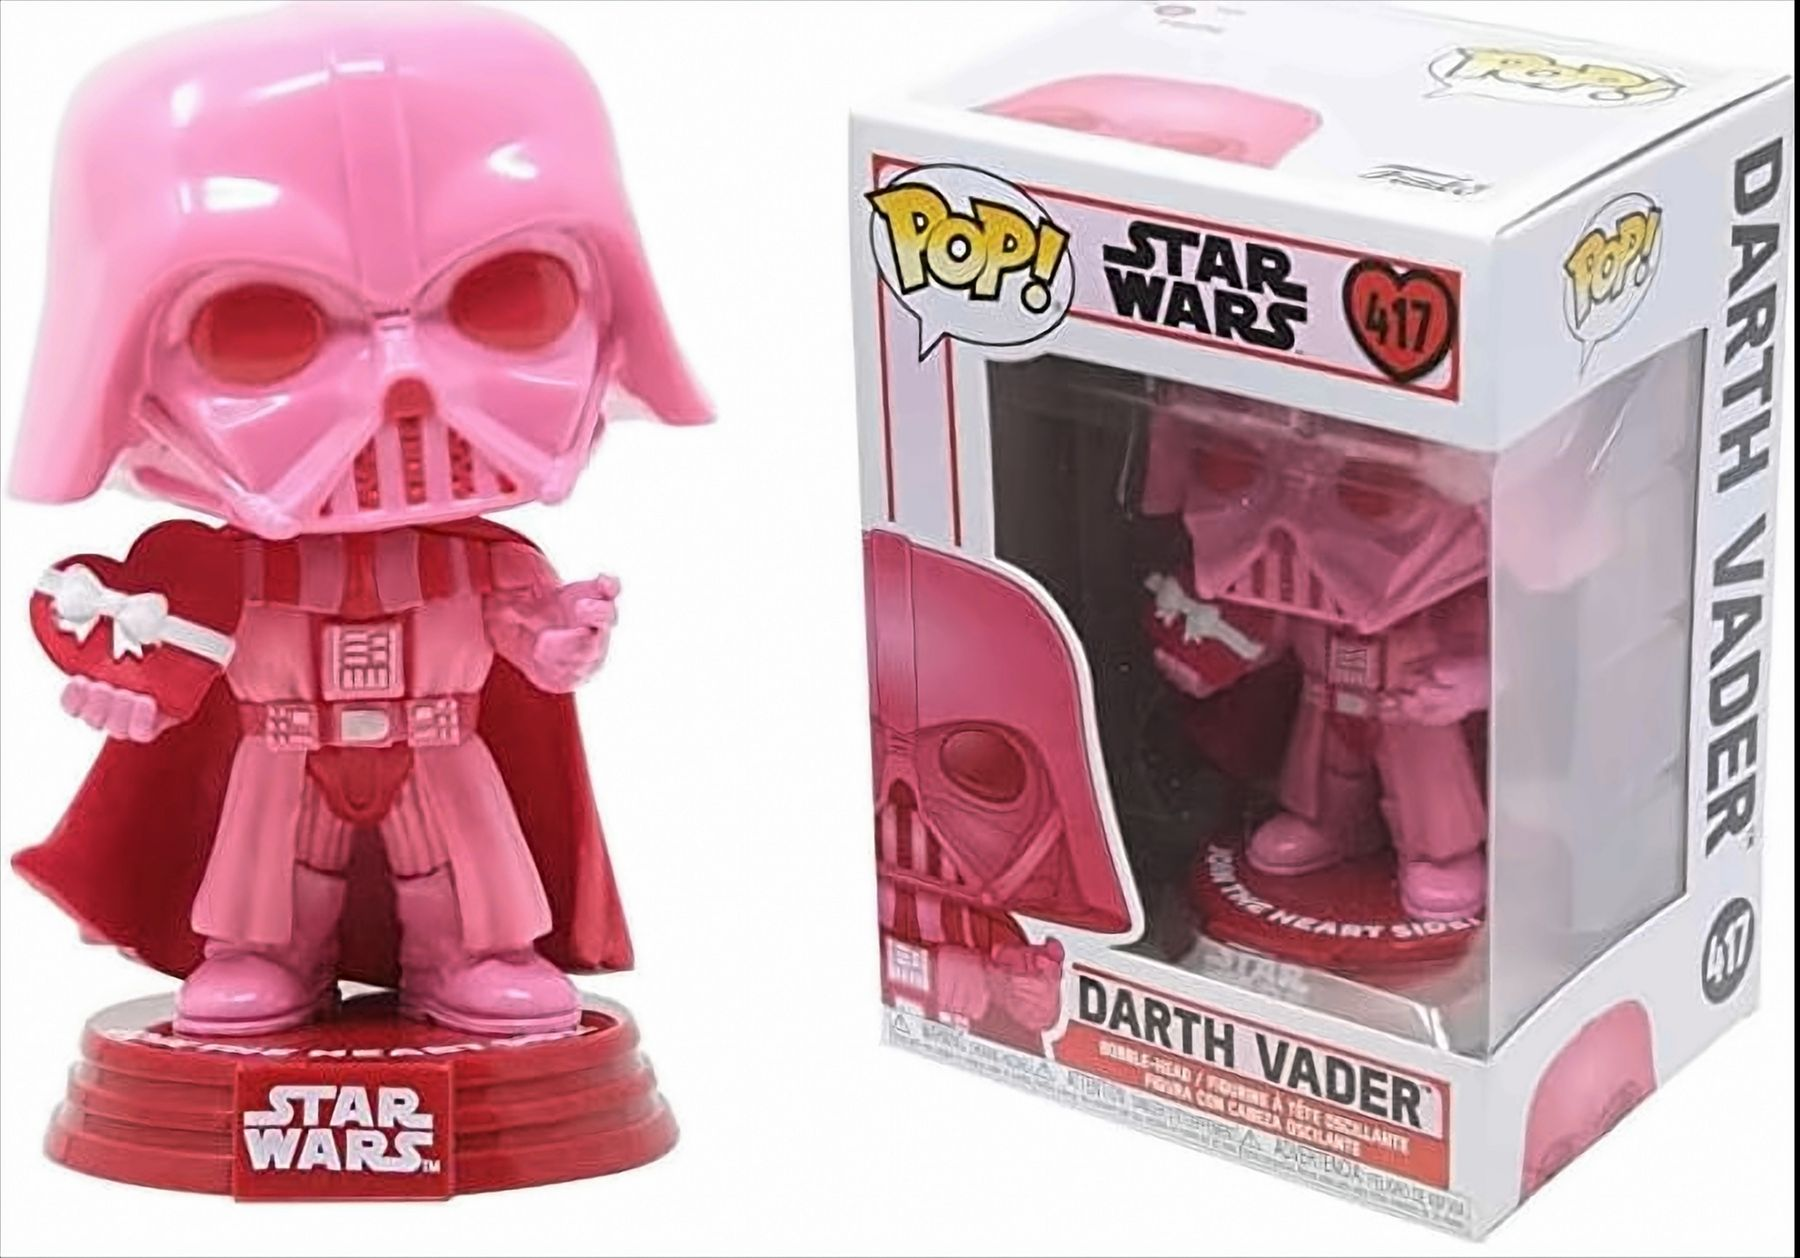 Vader Star Valentines Wars: Darth